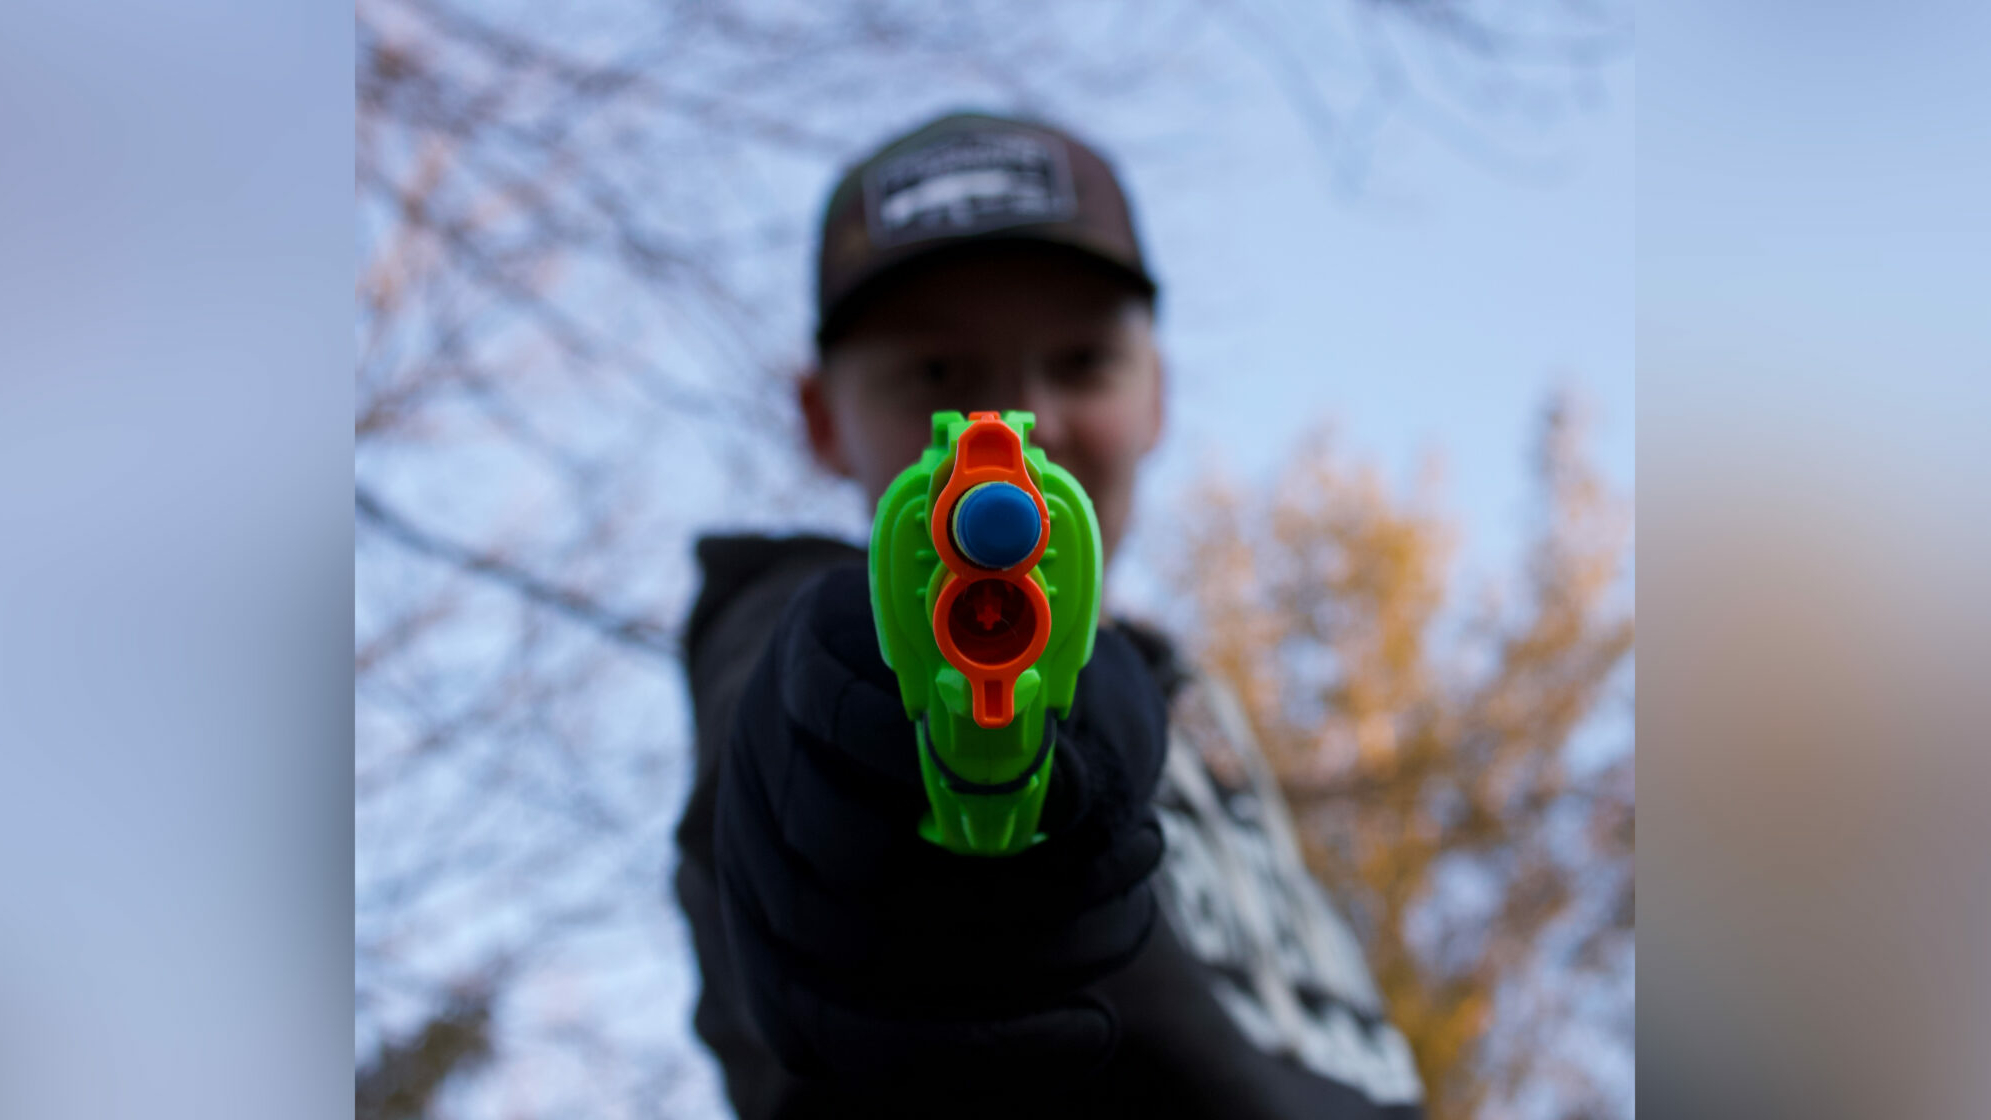 В Петербурге мужчина с игрушечным пистолетом рискнул обнести продуктовый магазин